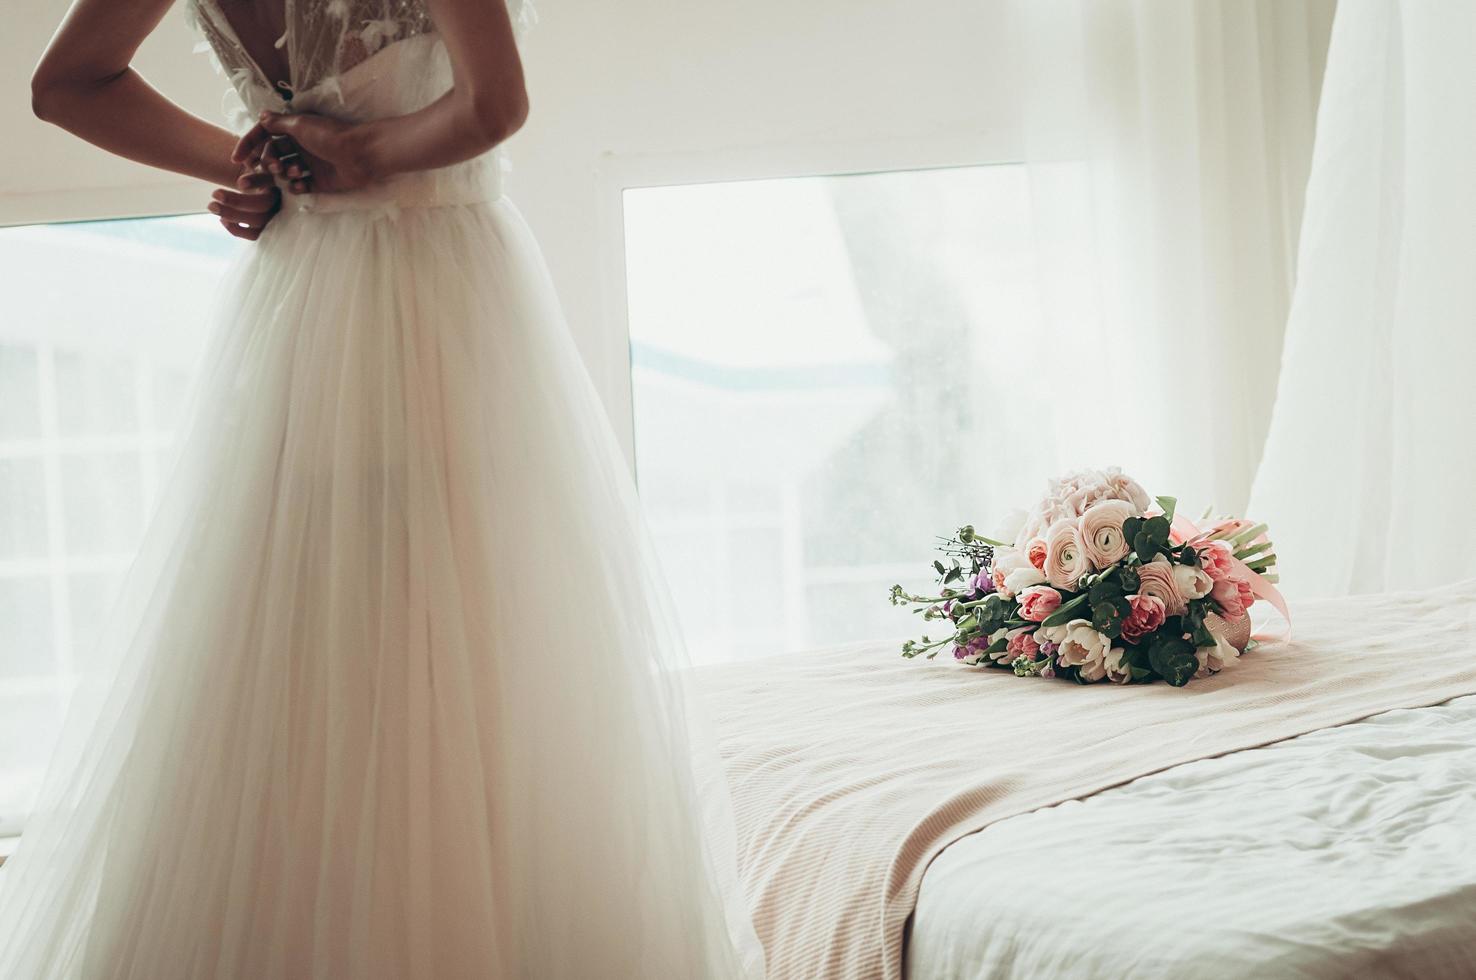 bruidsboeket op een bed, wazige bruid die haar jurk dichtknoopt, achteraanzicht foto